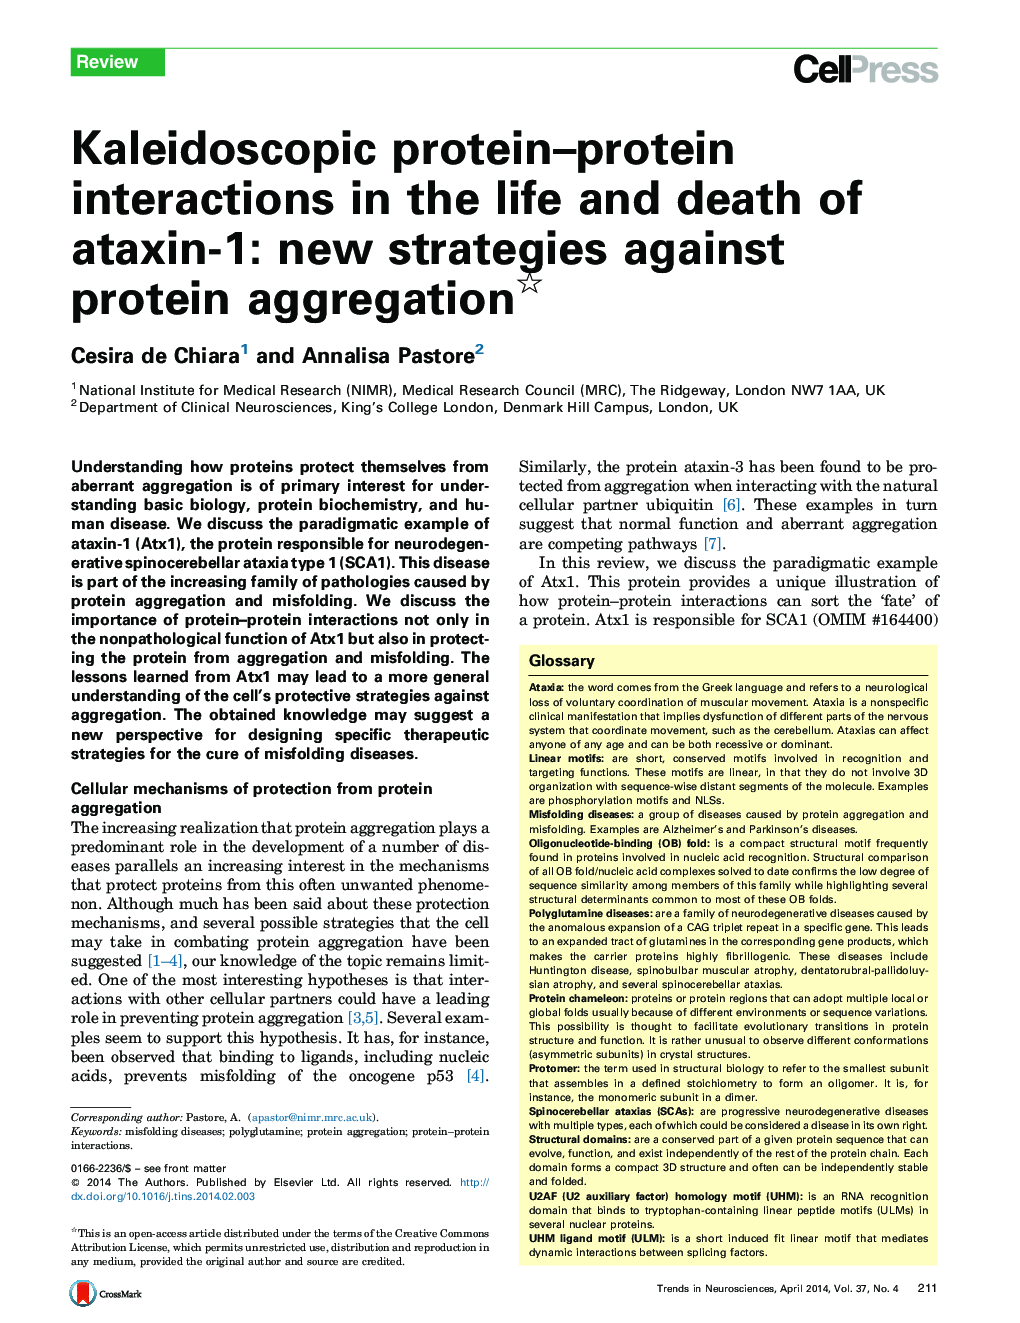 تعاملات پروتئین-پروتئین کالیوودوسکوپی در زندگی و مرگ استاکسین-1: استراتژی جدید علیه تجمع پروتئین 